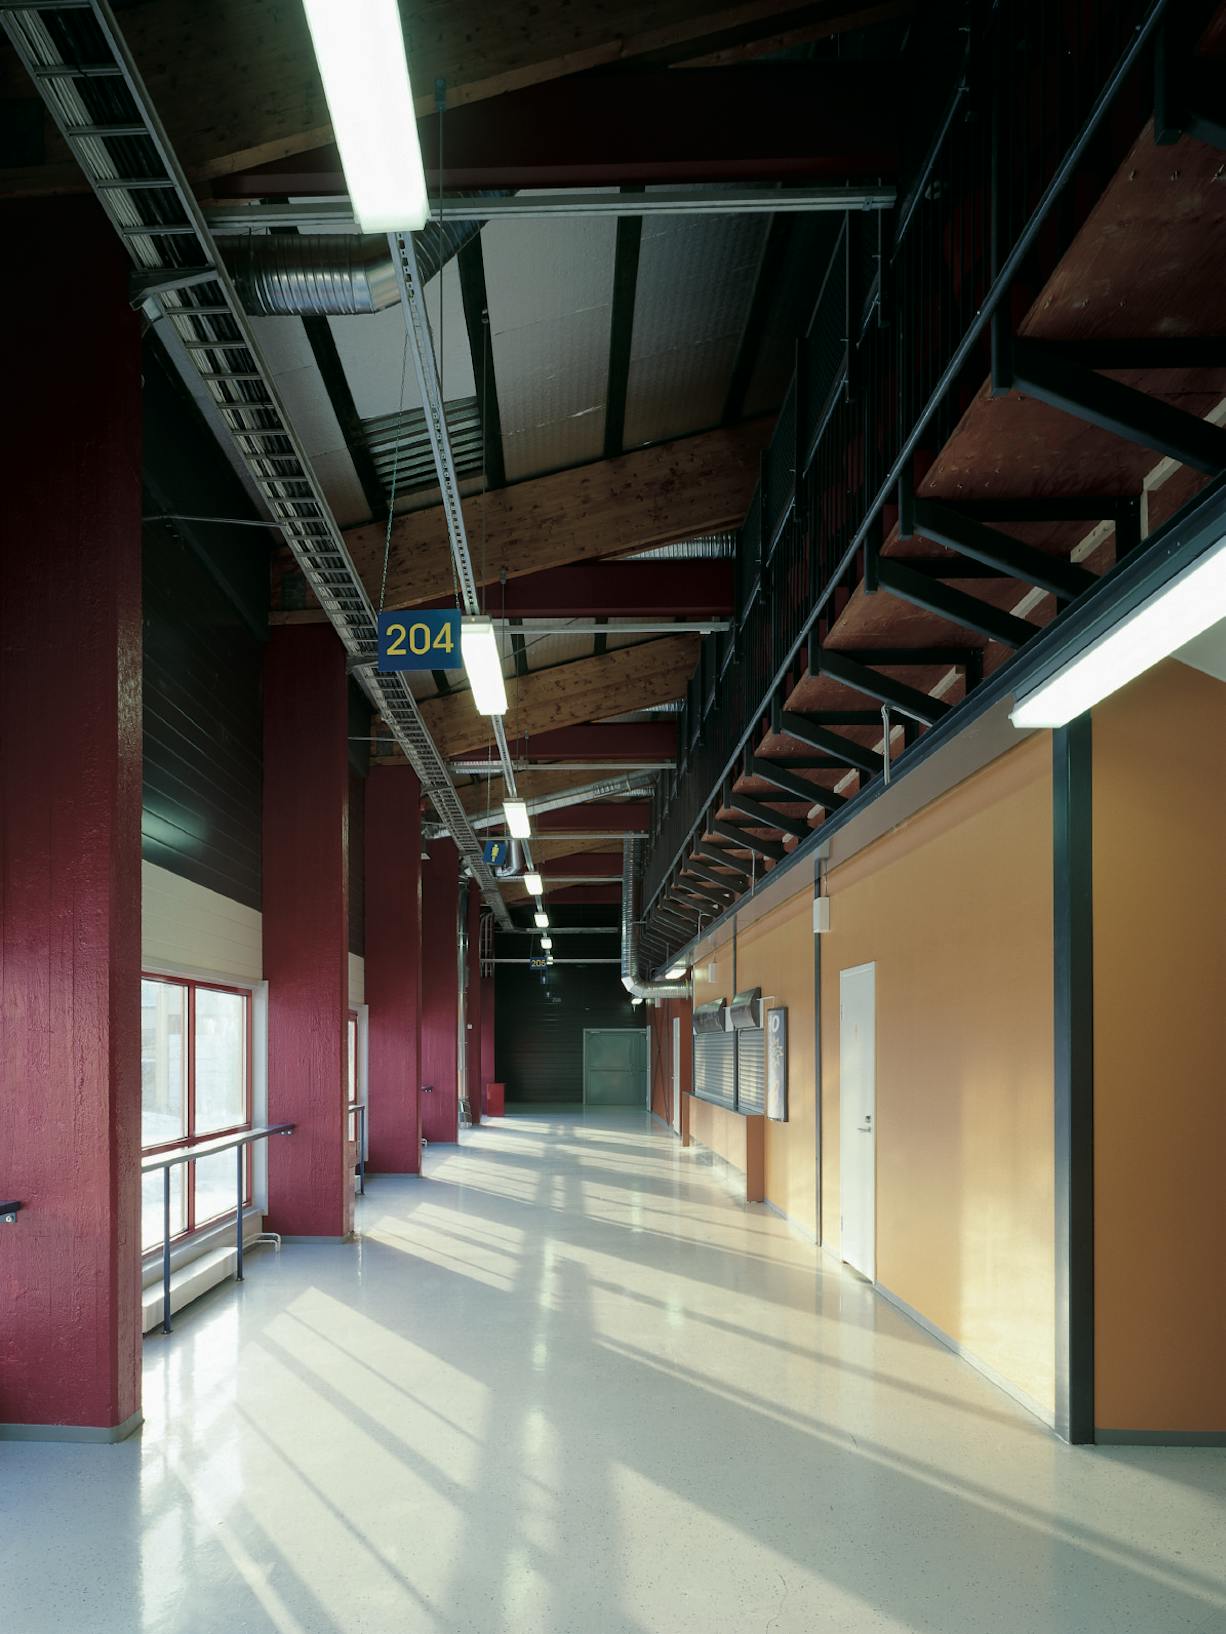 Concrete Floors - Public and Commercial Buildings Hallway Image